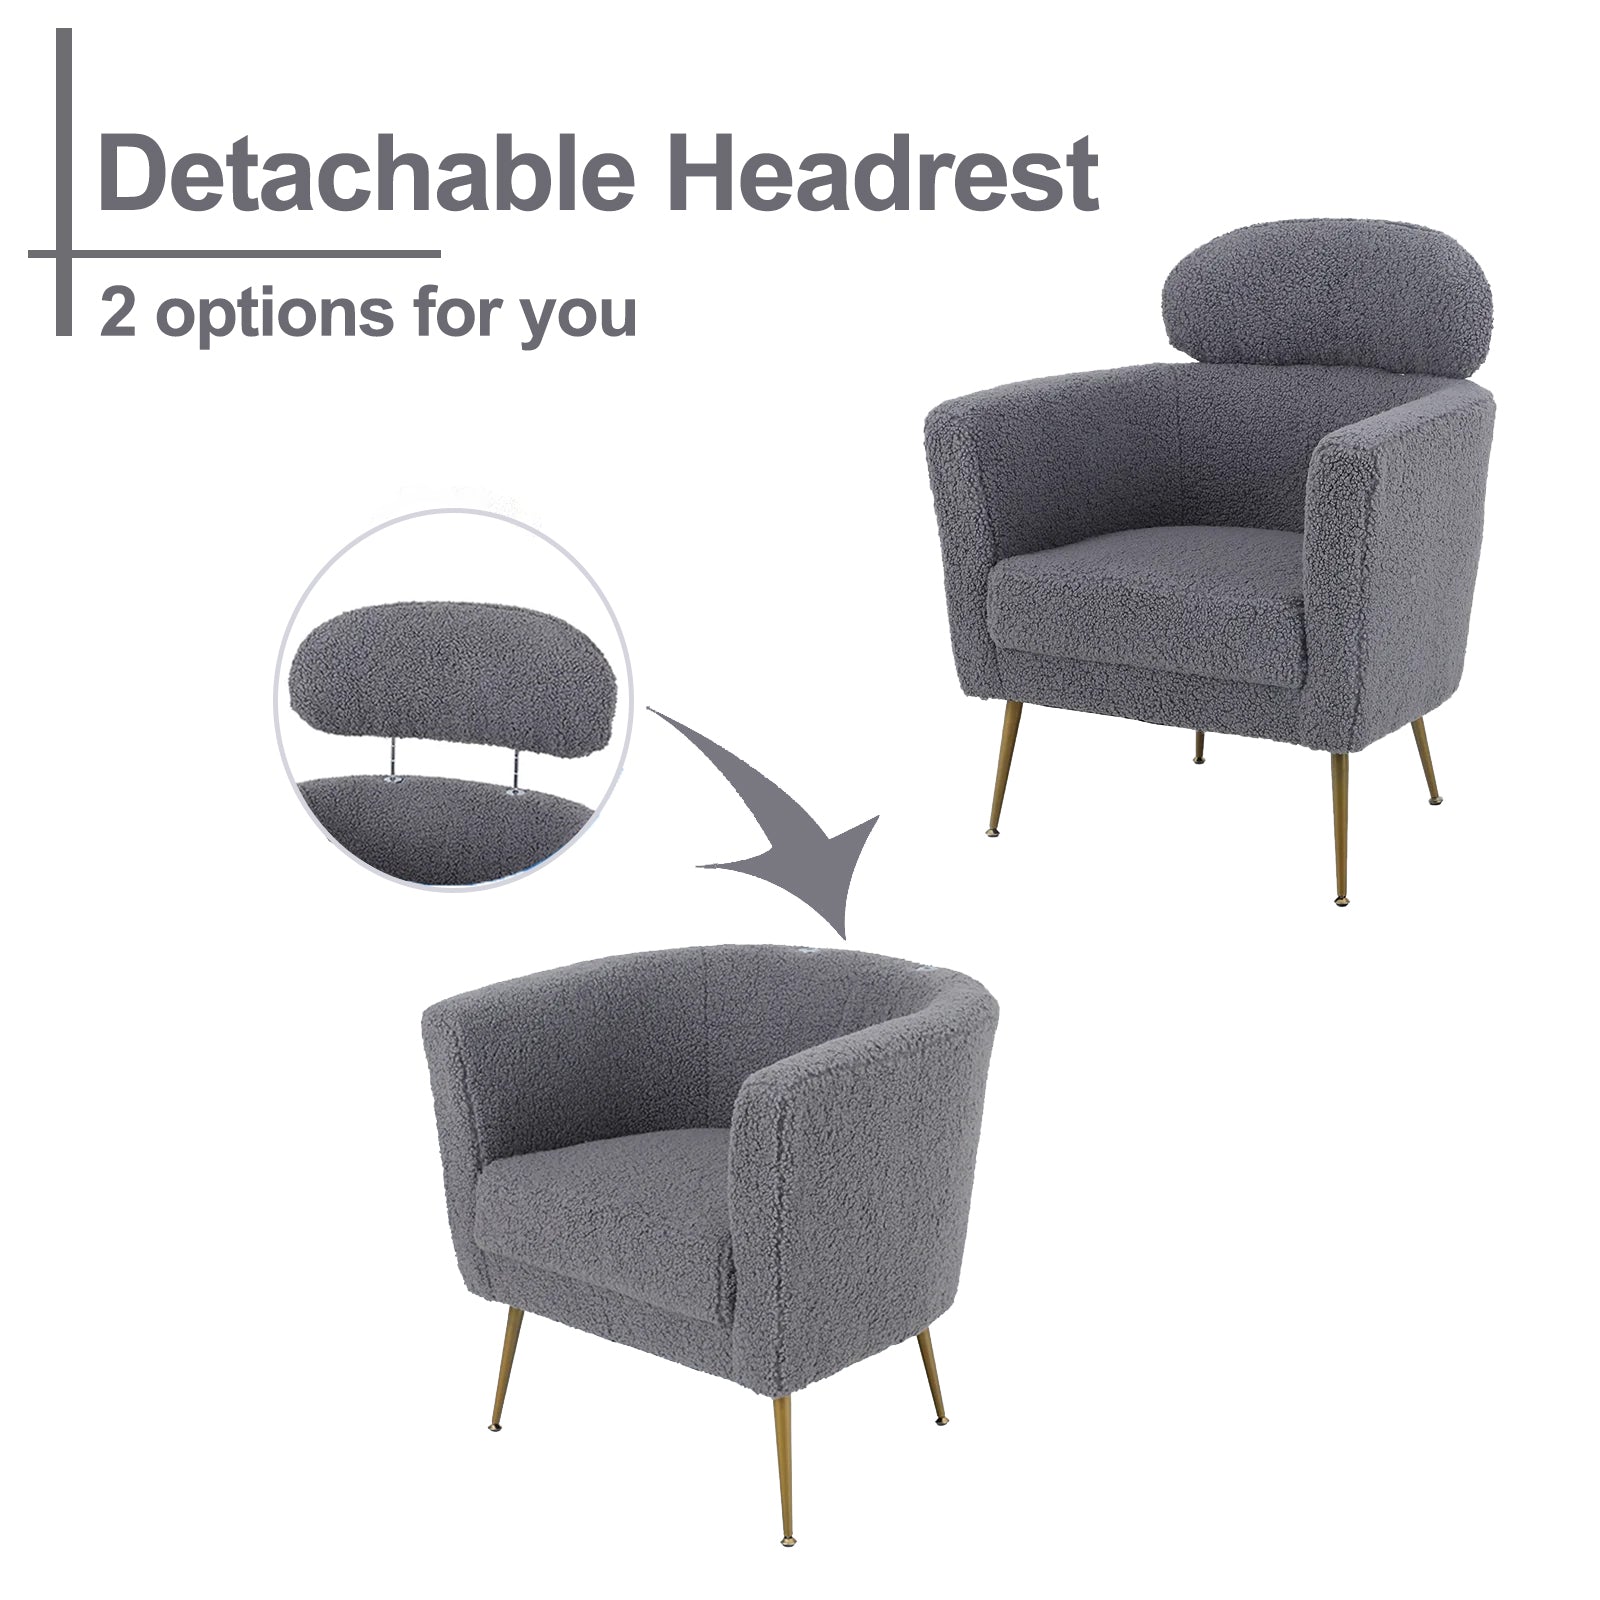 PHI VILLA Modern Sofa Armchair with Detachable Headrest